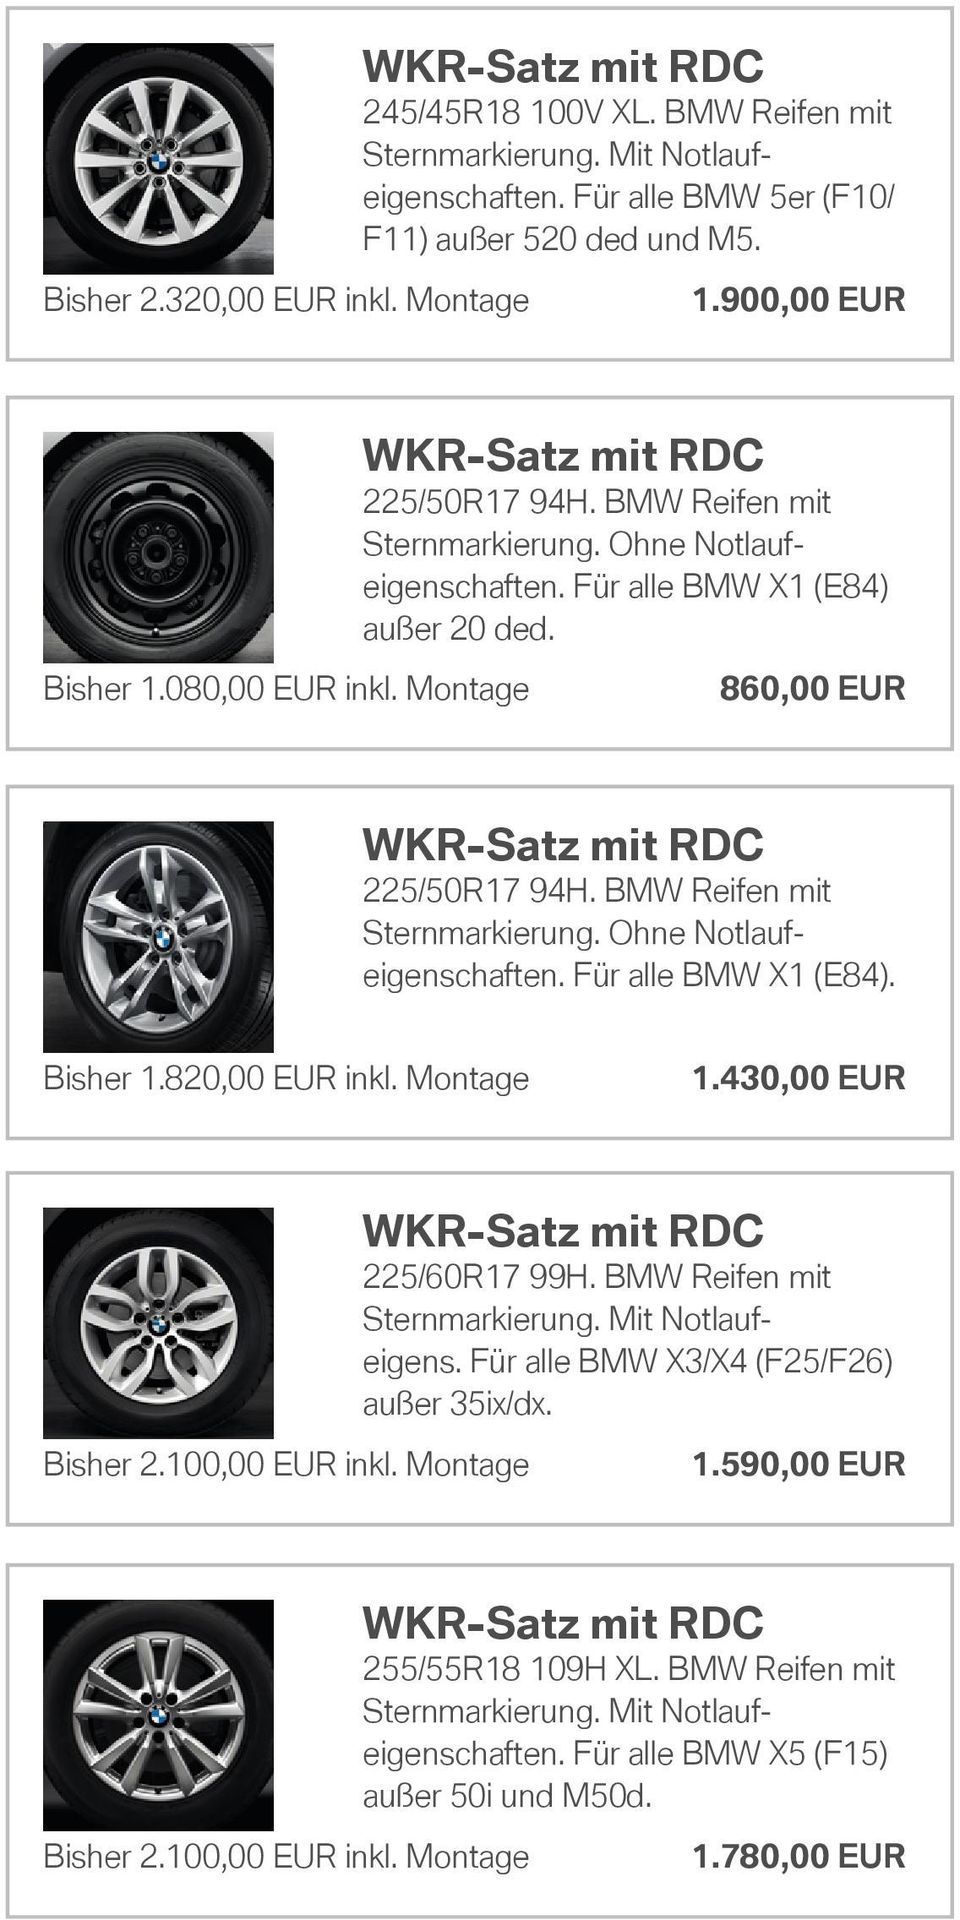 Bisher 1.820,00 EUR inkl. Montage 1.430,00 EUR 225/60R17 99H. BMW Reifen mit Sternmarkierung. Mit Notlaufeigens. Für alle BMW X3/X4 (F25/F26) außer 35ix/dx.